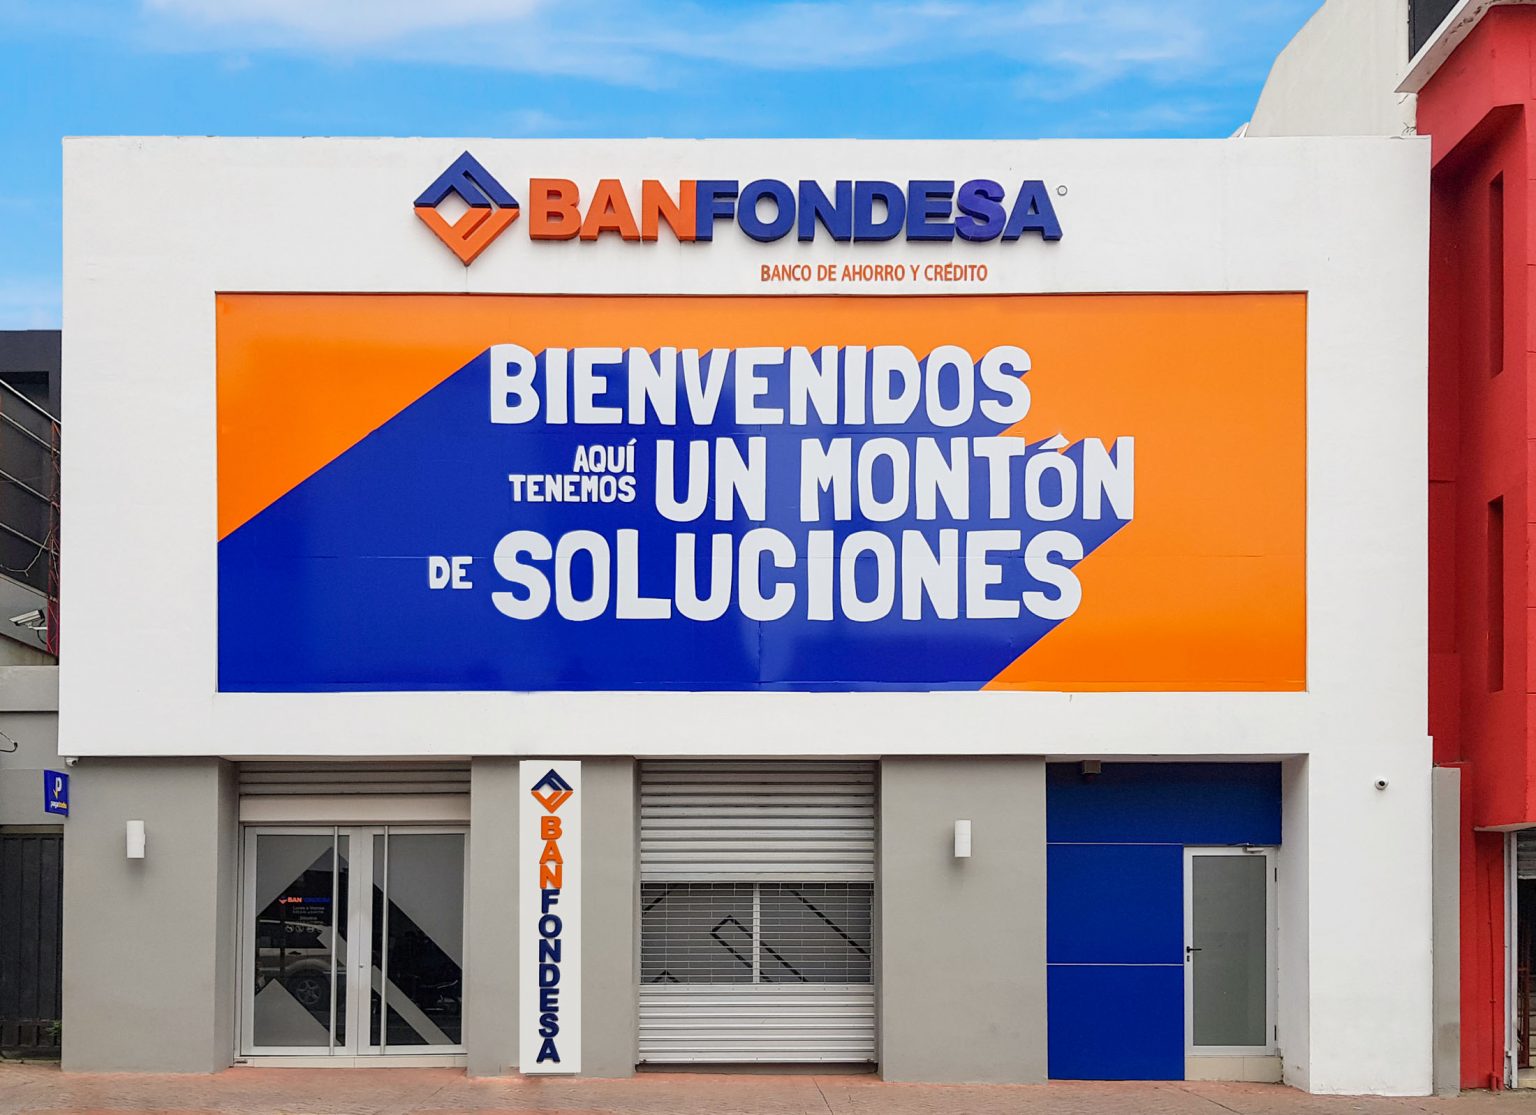 BANFONDESA emitira Bonos Corporativos en el Mercado de Valores de la Republica Dominicana